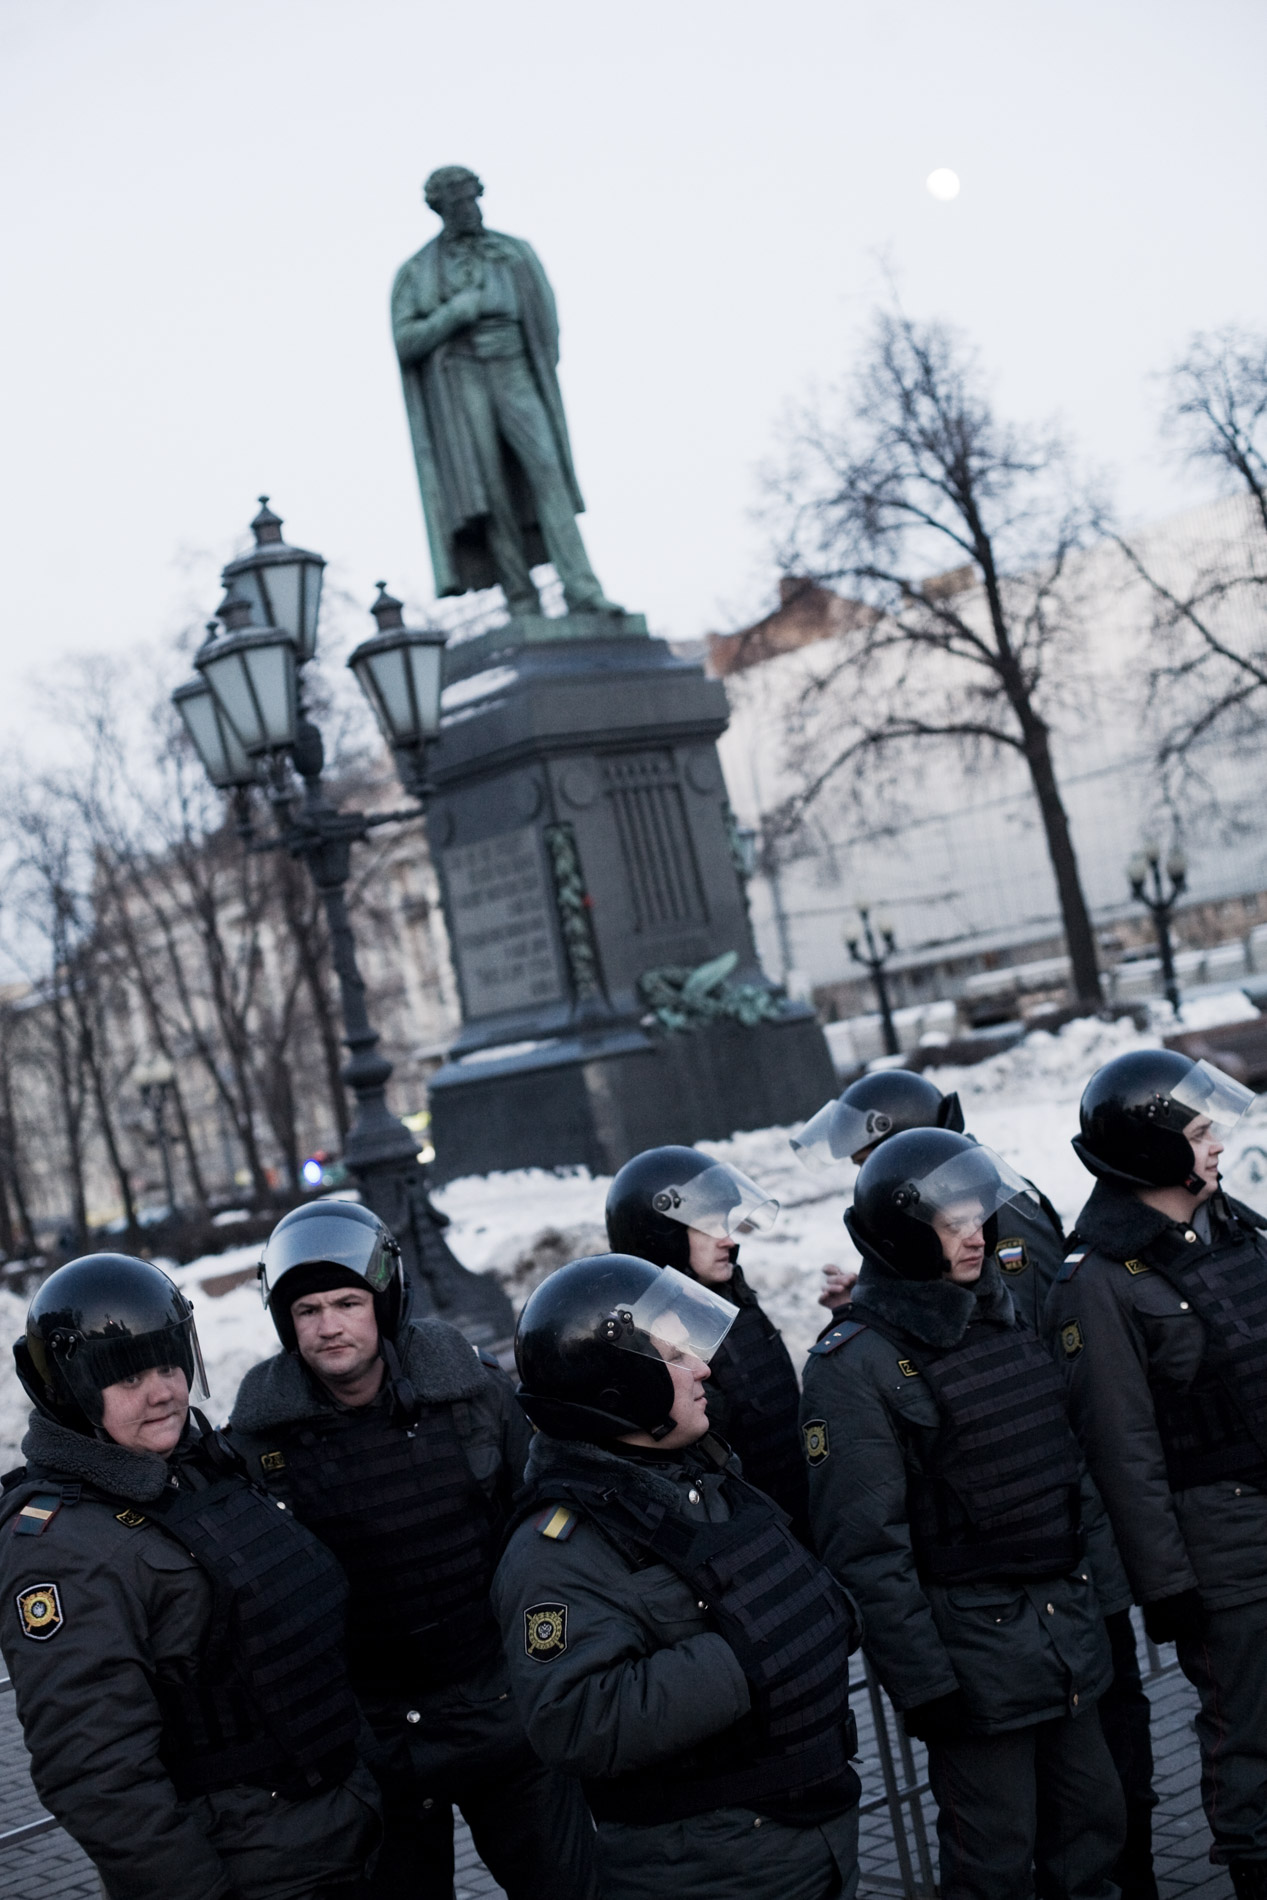 Une dizaine de manifestants opposes a Poutine ont essaye de se reunir place Pouchkinskaya, malgre les dizaines de policiers. le 6 mars 2012 a Moscou